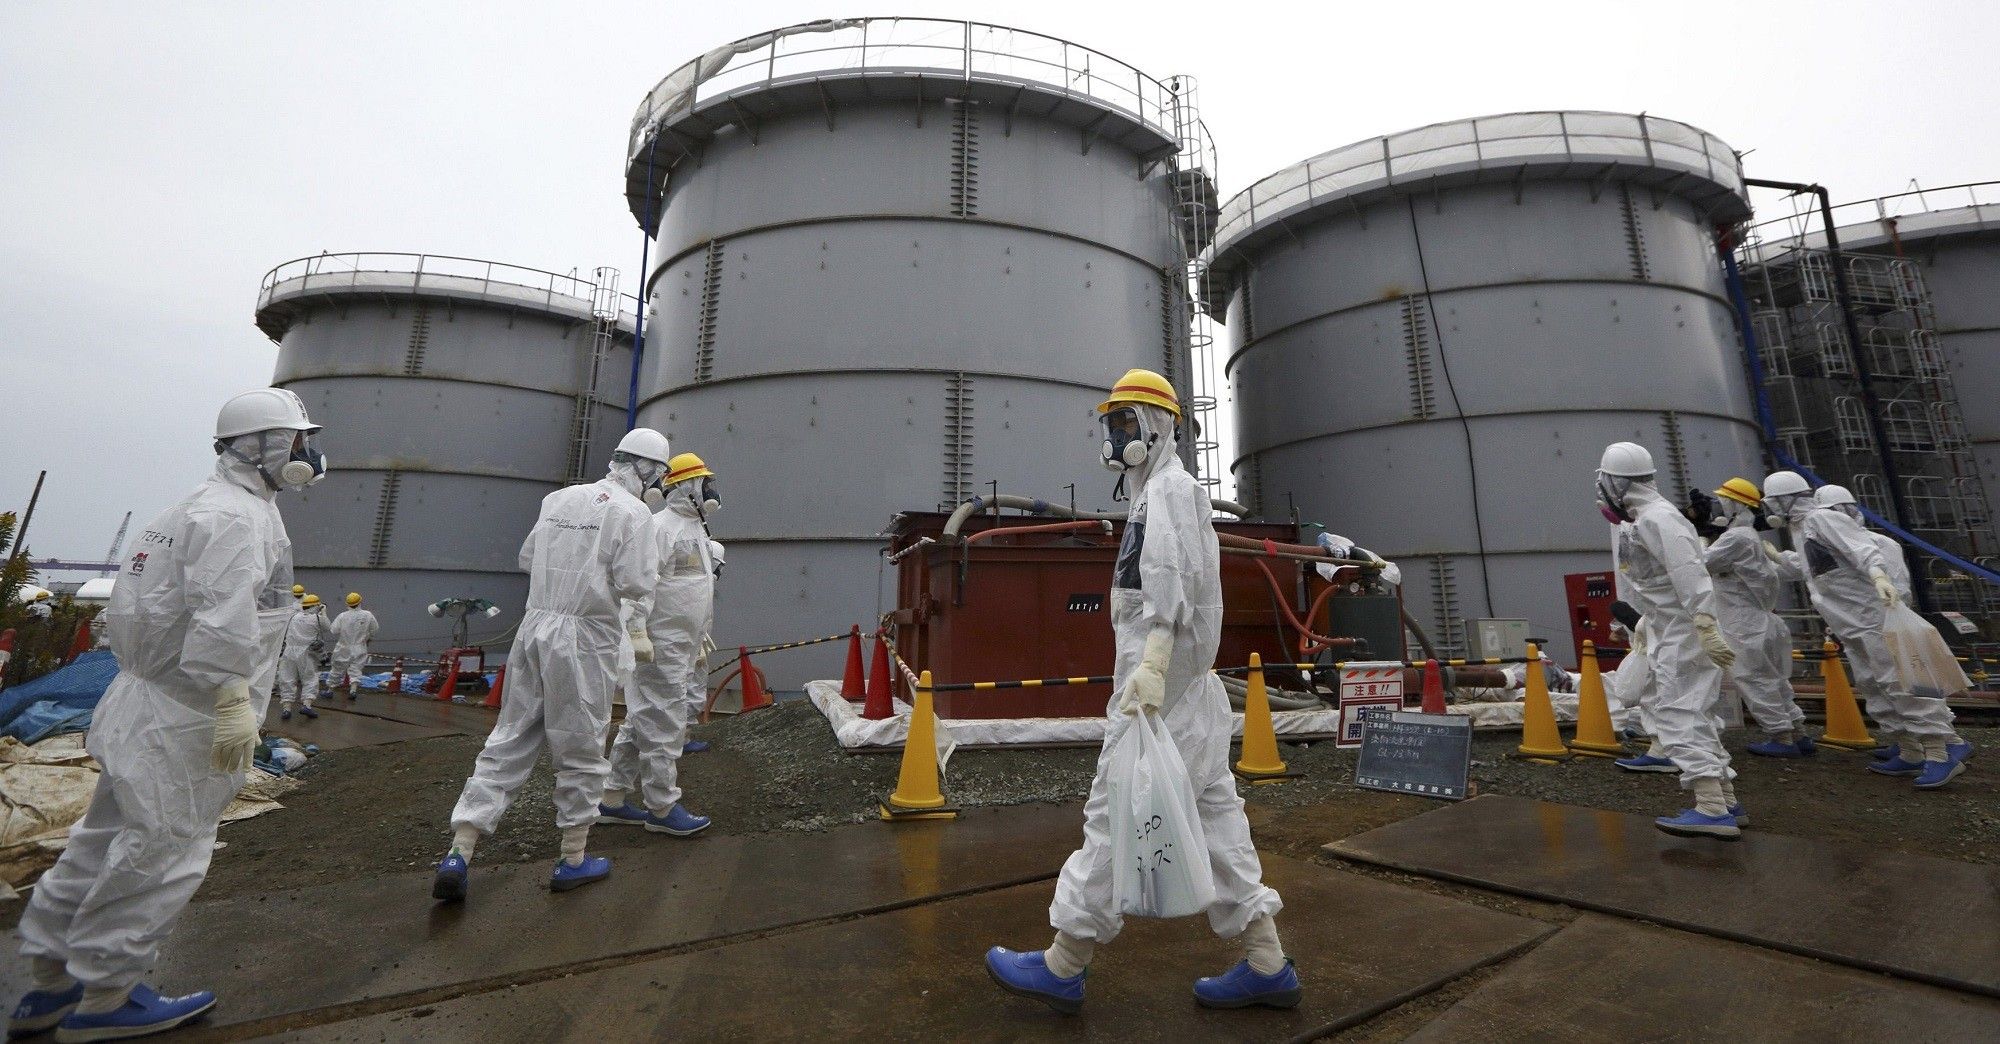 Ровно 10 лет назад катастрофа на АЭС "Фукусима" перевернула взгляды Германии на энергетику / фото REUTERS